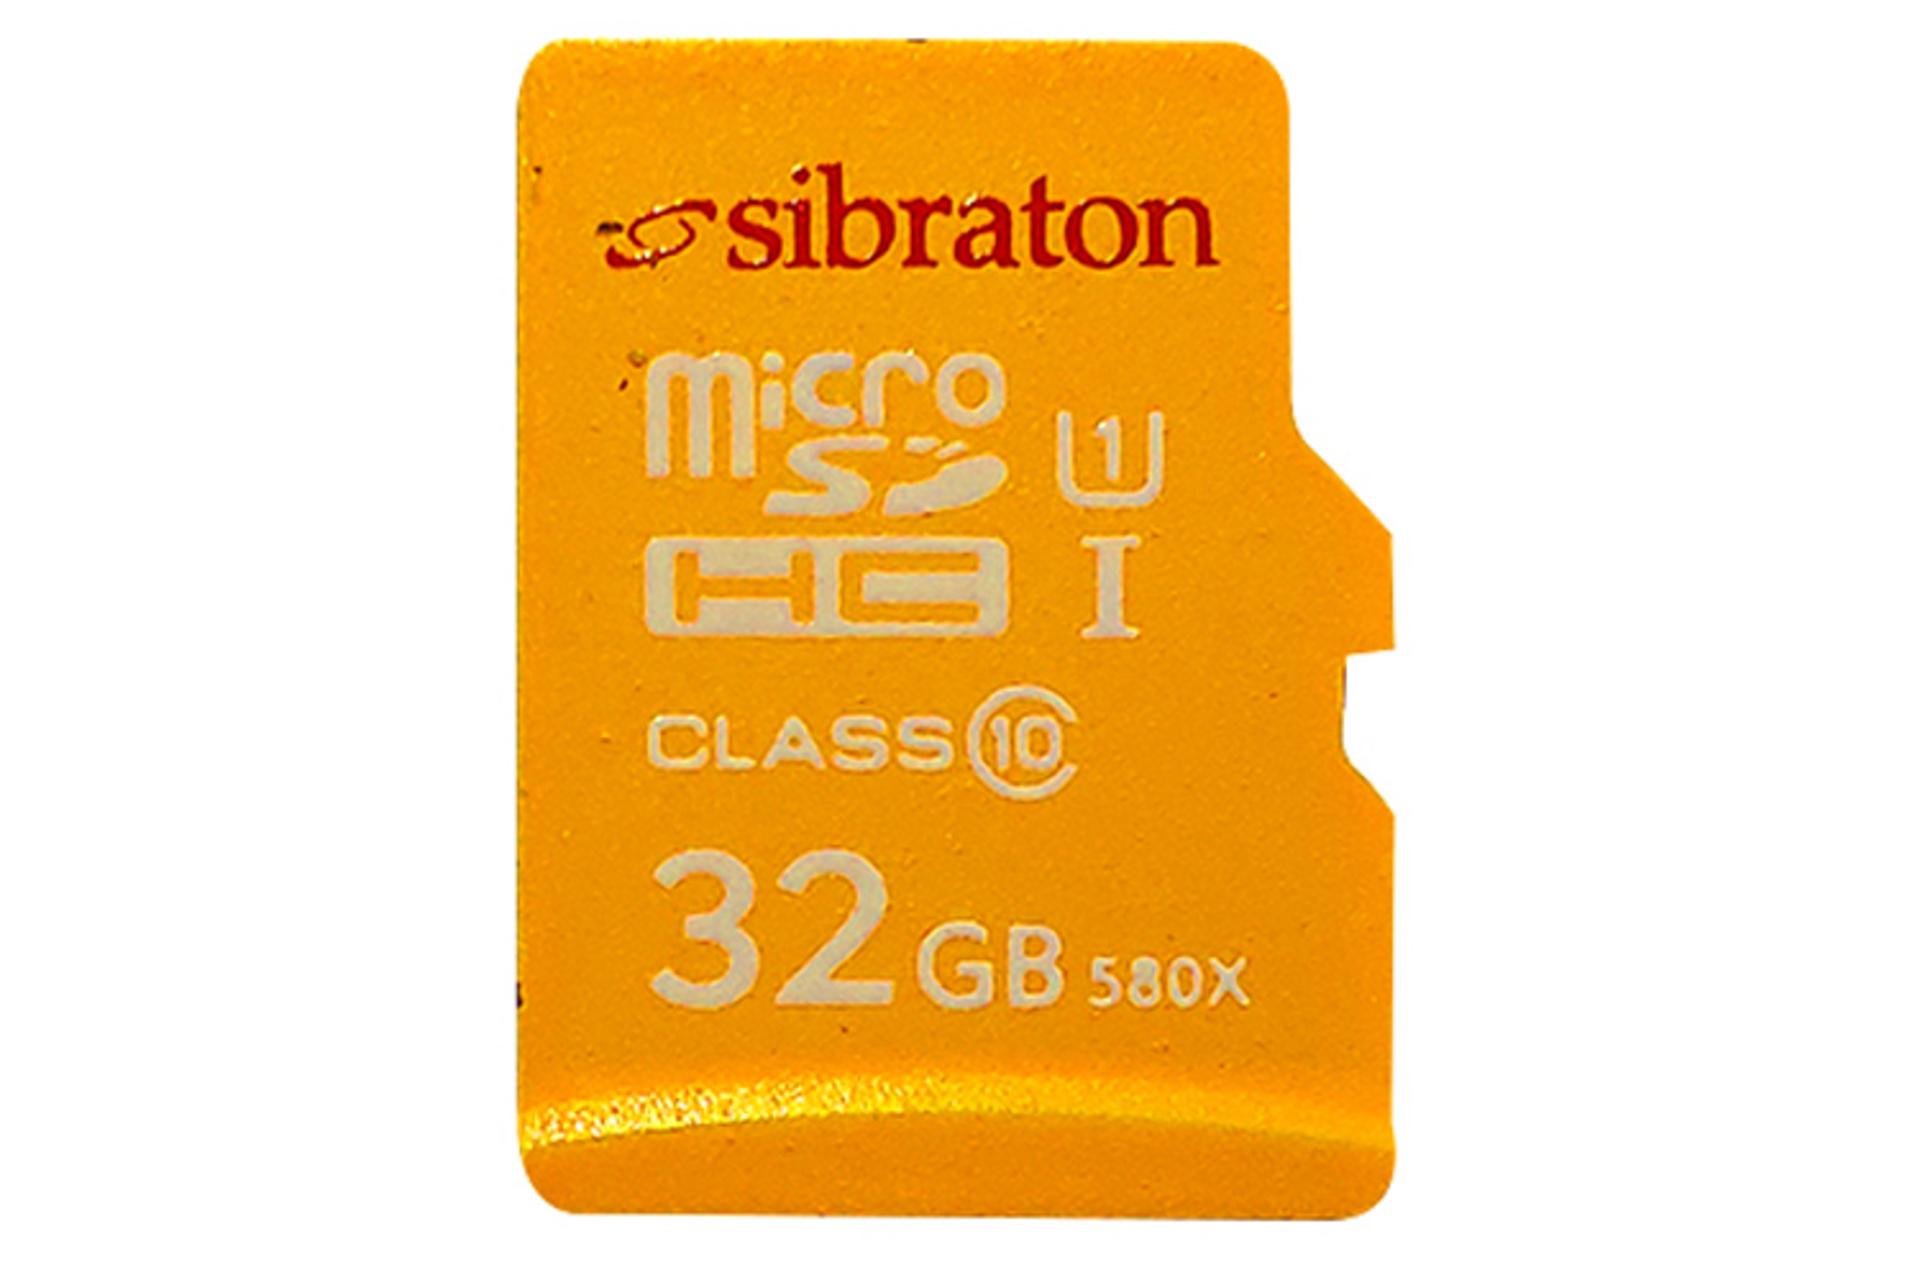 مرجع متخصصين ايران كارت حافظه سيبراتون microSDHC با ظرفيت 32 گيگابايت مدل 580x